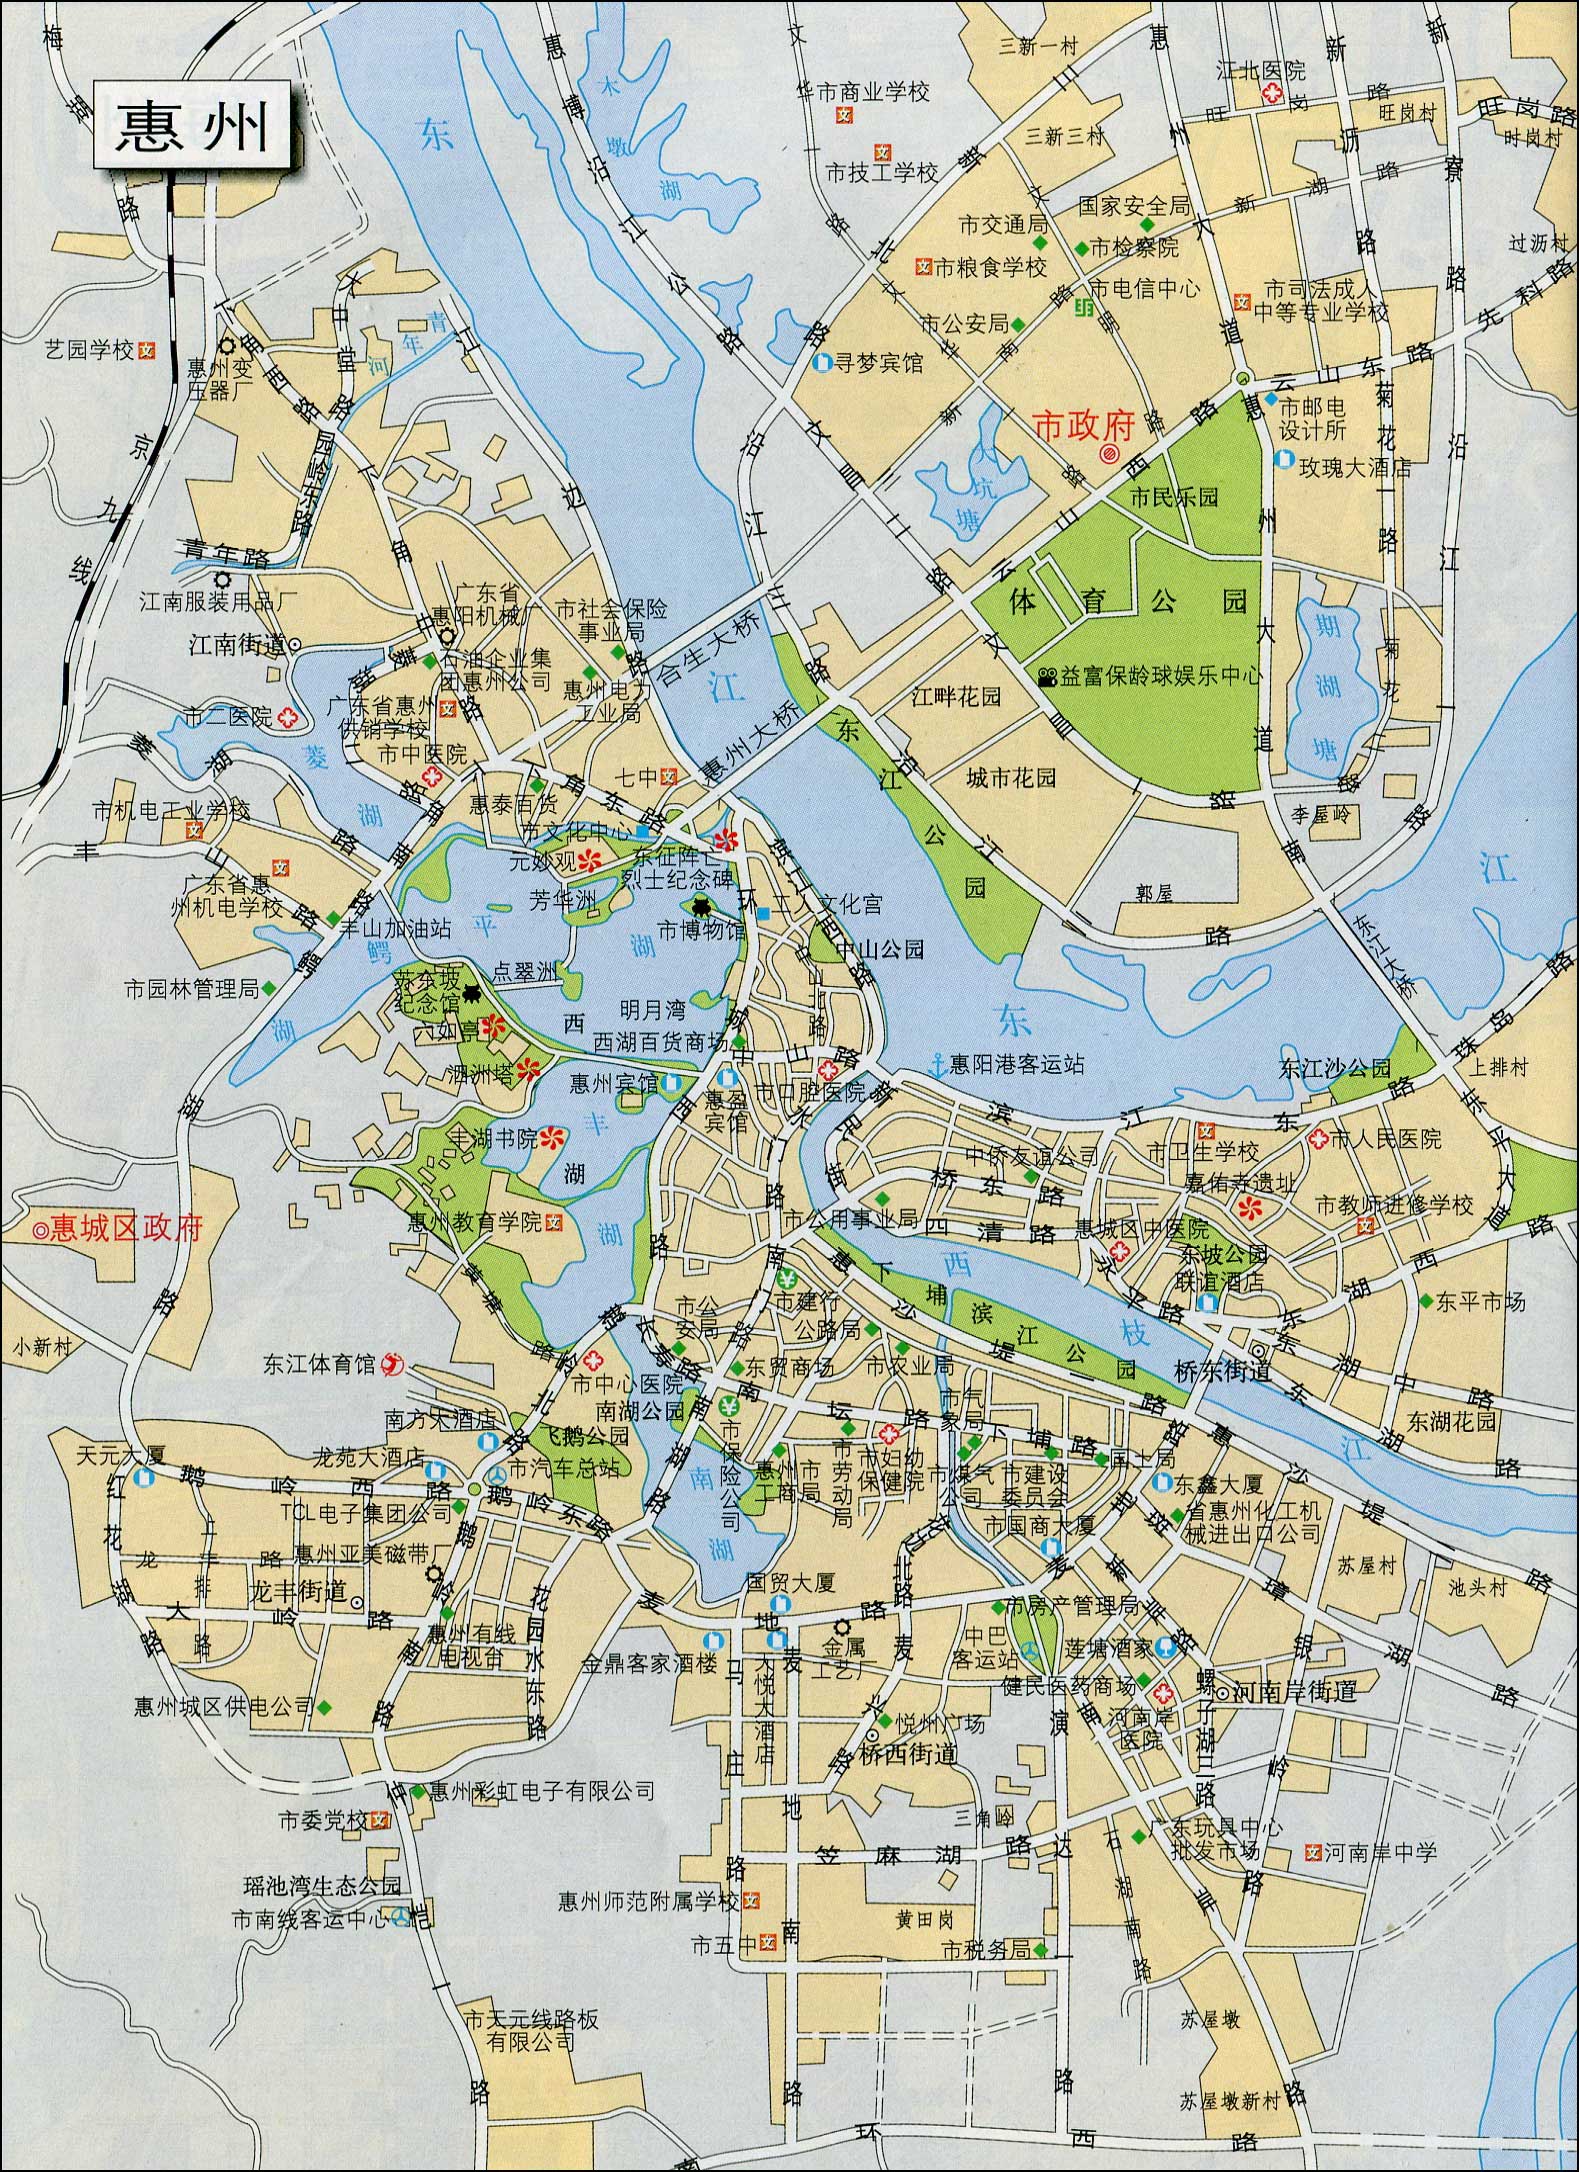 广东 惠州市 >> 惠州市城区地图  相关链接: 广州市  深圳市  珠海市